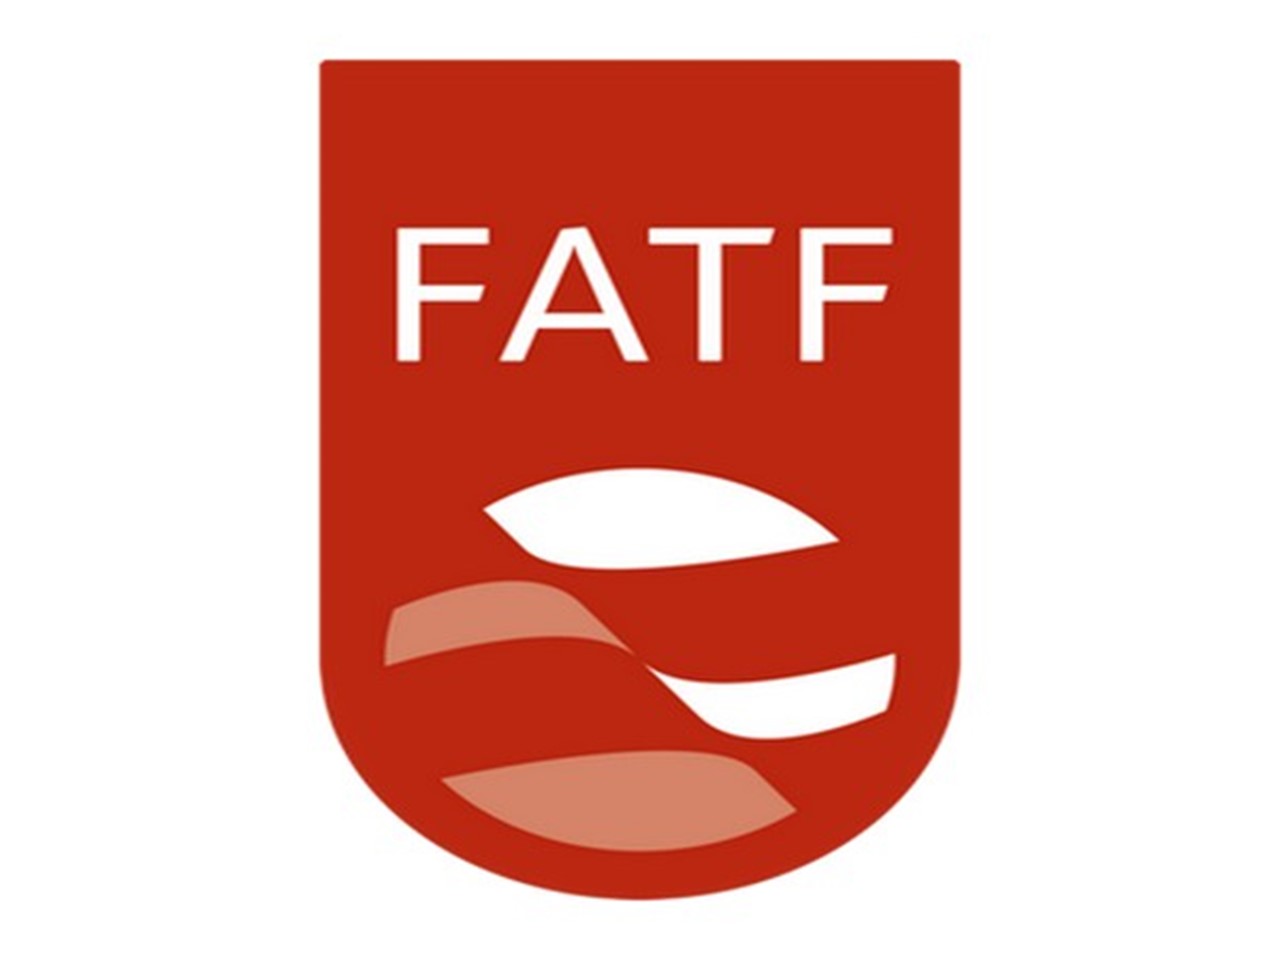 (Financial Action task Force) — фатф. Фатф эмблема. FATF логотип. Фатф без фона. Отмыванием денег фатф